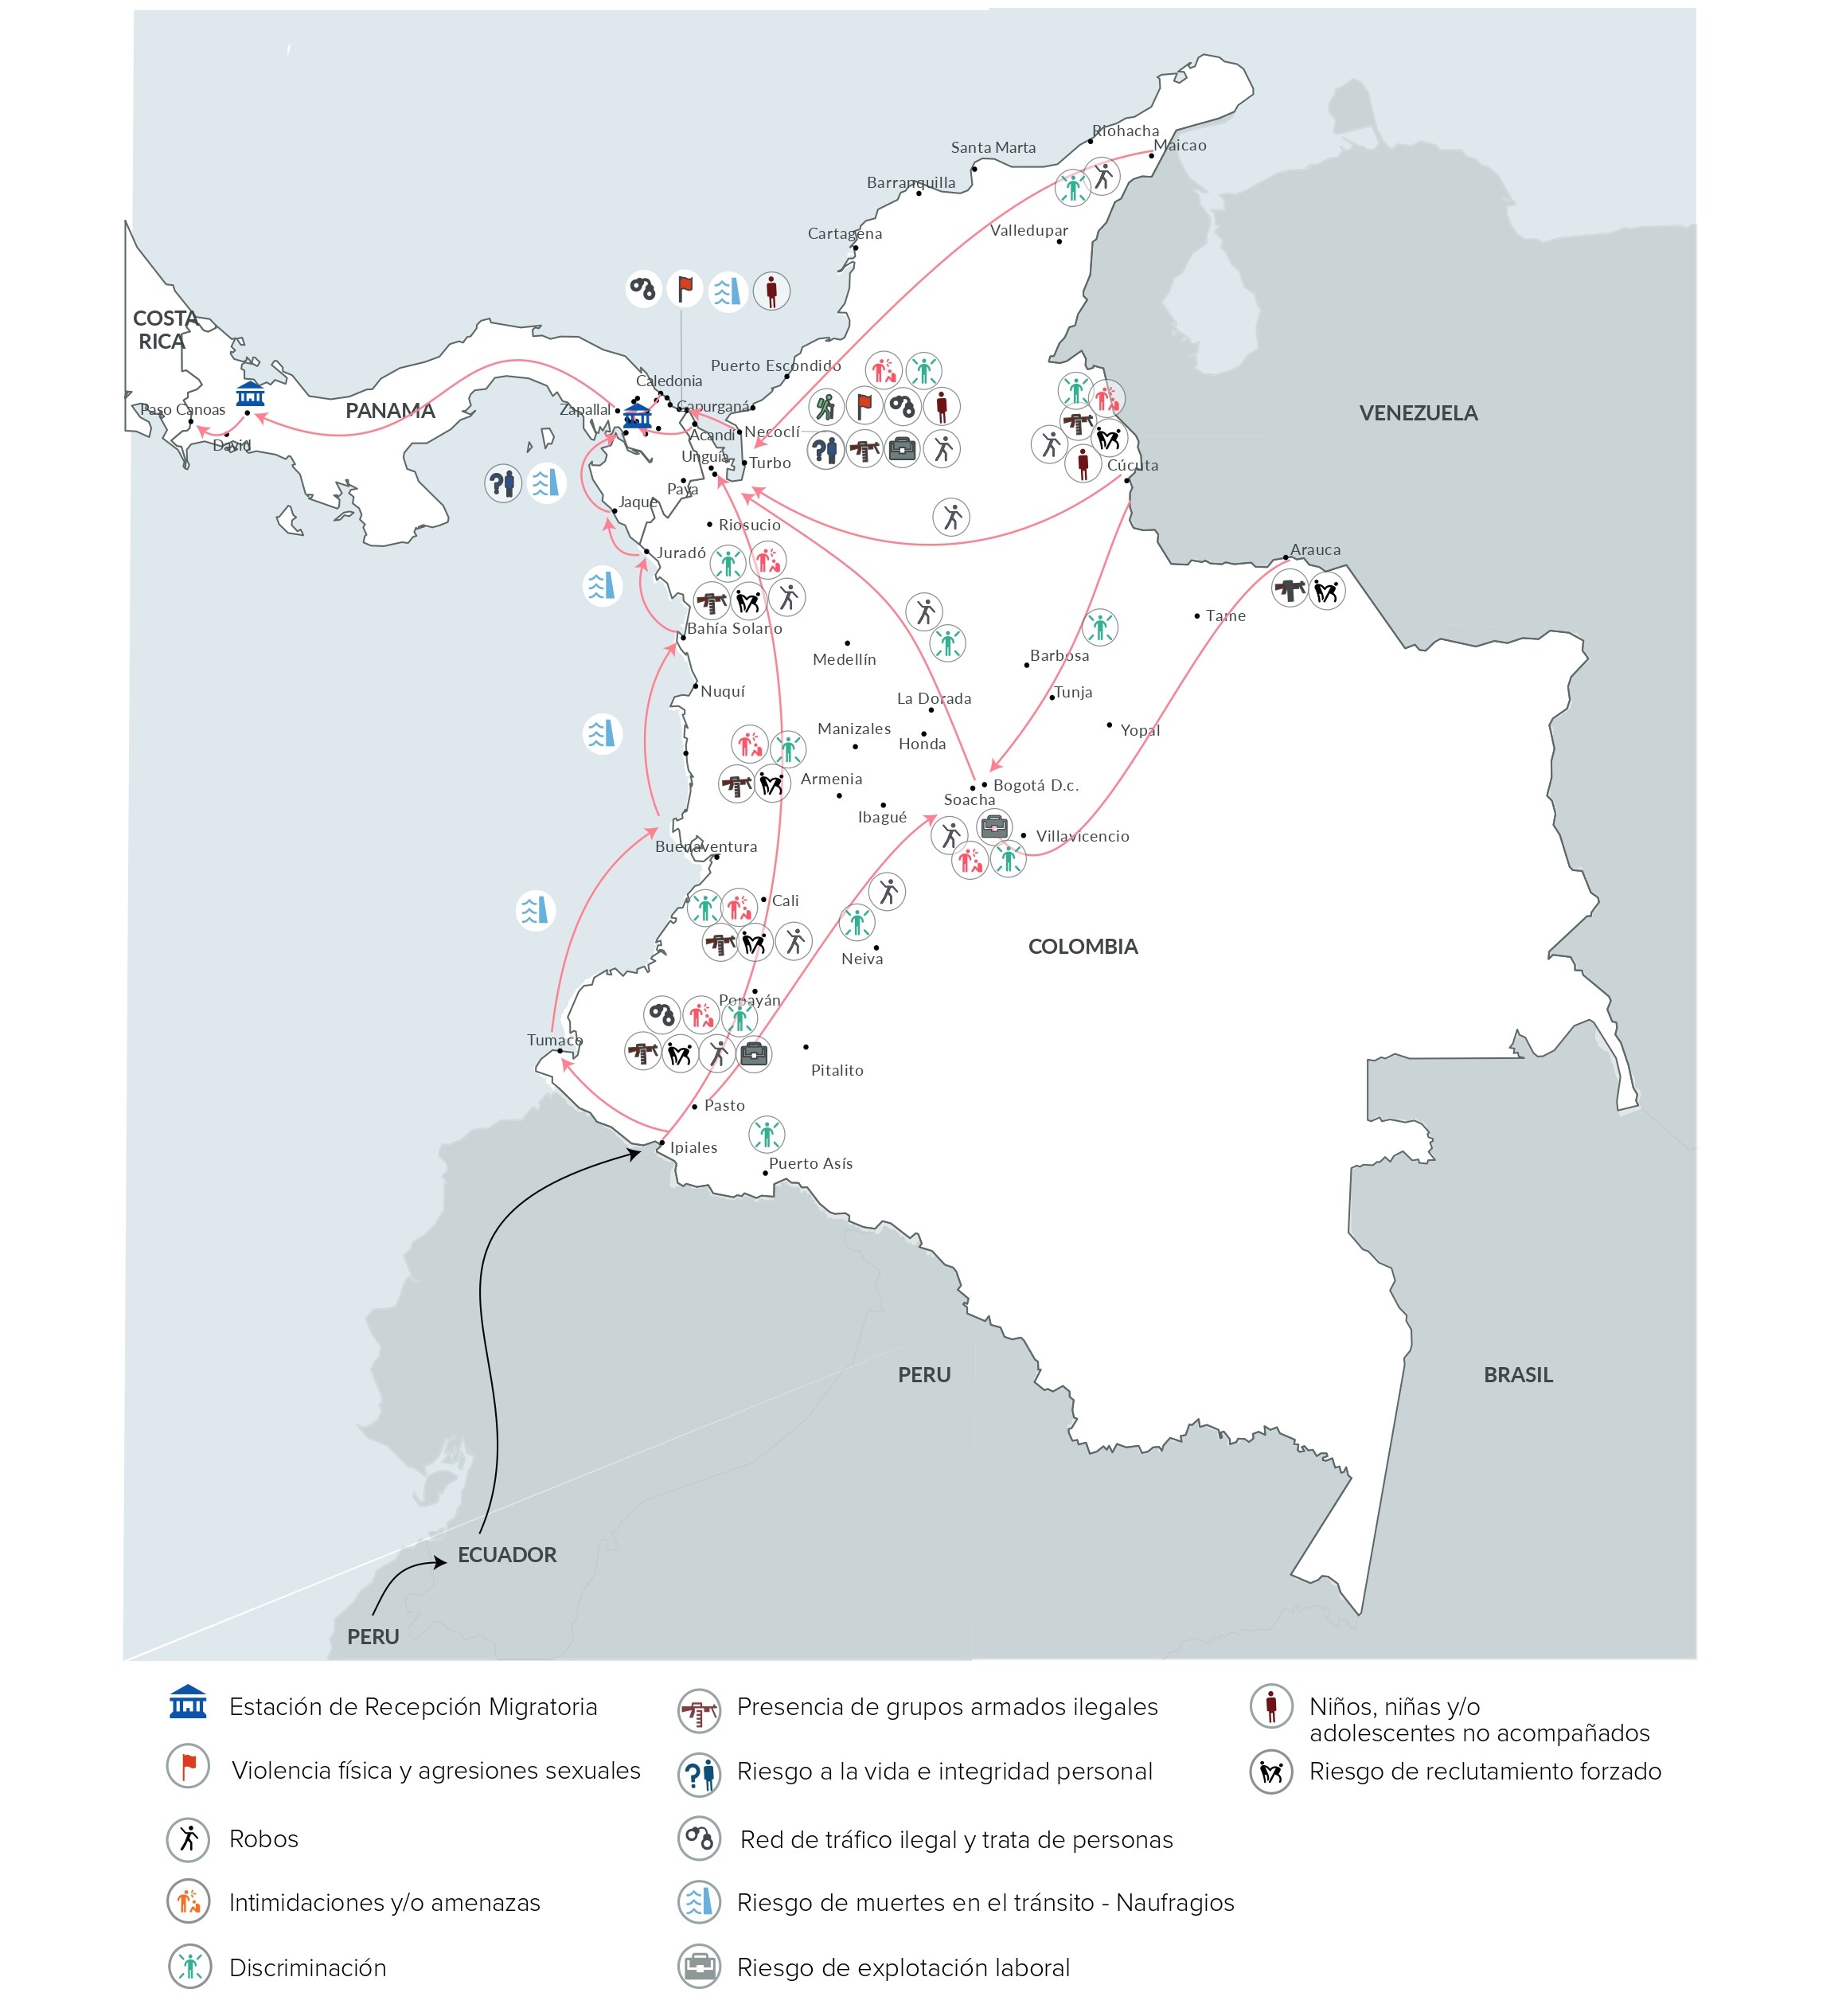 Rutas y riesgos identificados en el recorrido hacia el Darién. Mapa contenido en el informe "Sobreviviendo al Darién:la travesía de refugiados y migrantes por la selva". Recopila los cambios de los movimientos migratorios entre julio de 2022 y enero de este año